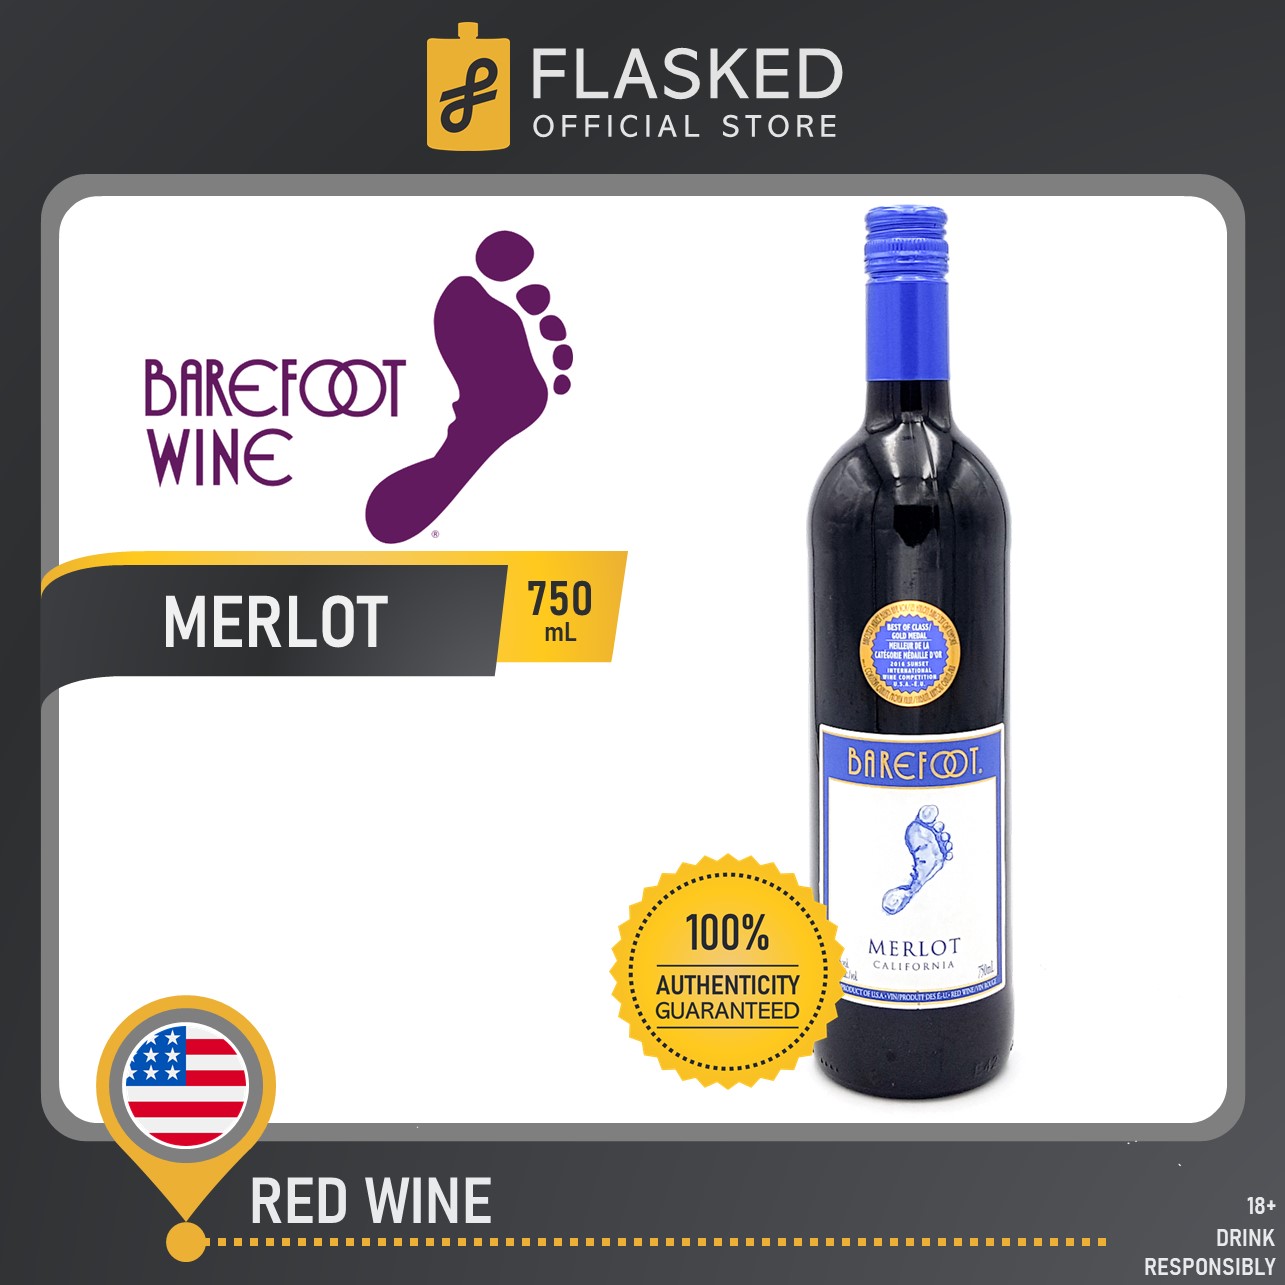 Barefoot Merlot California Red Wine 750mL